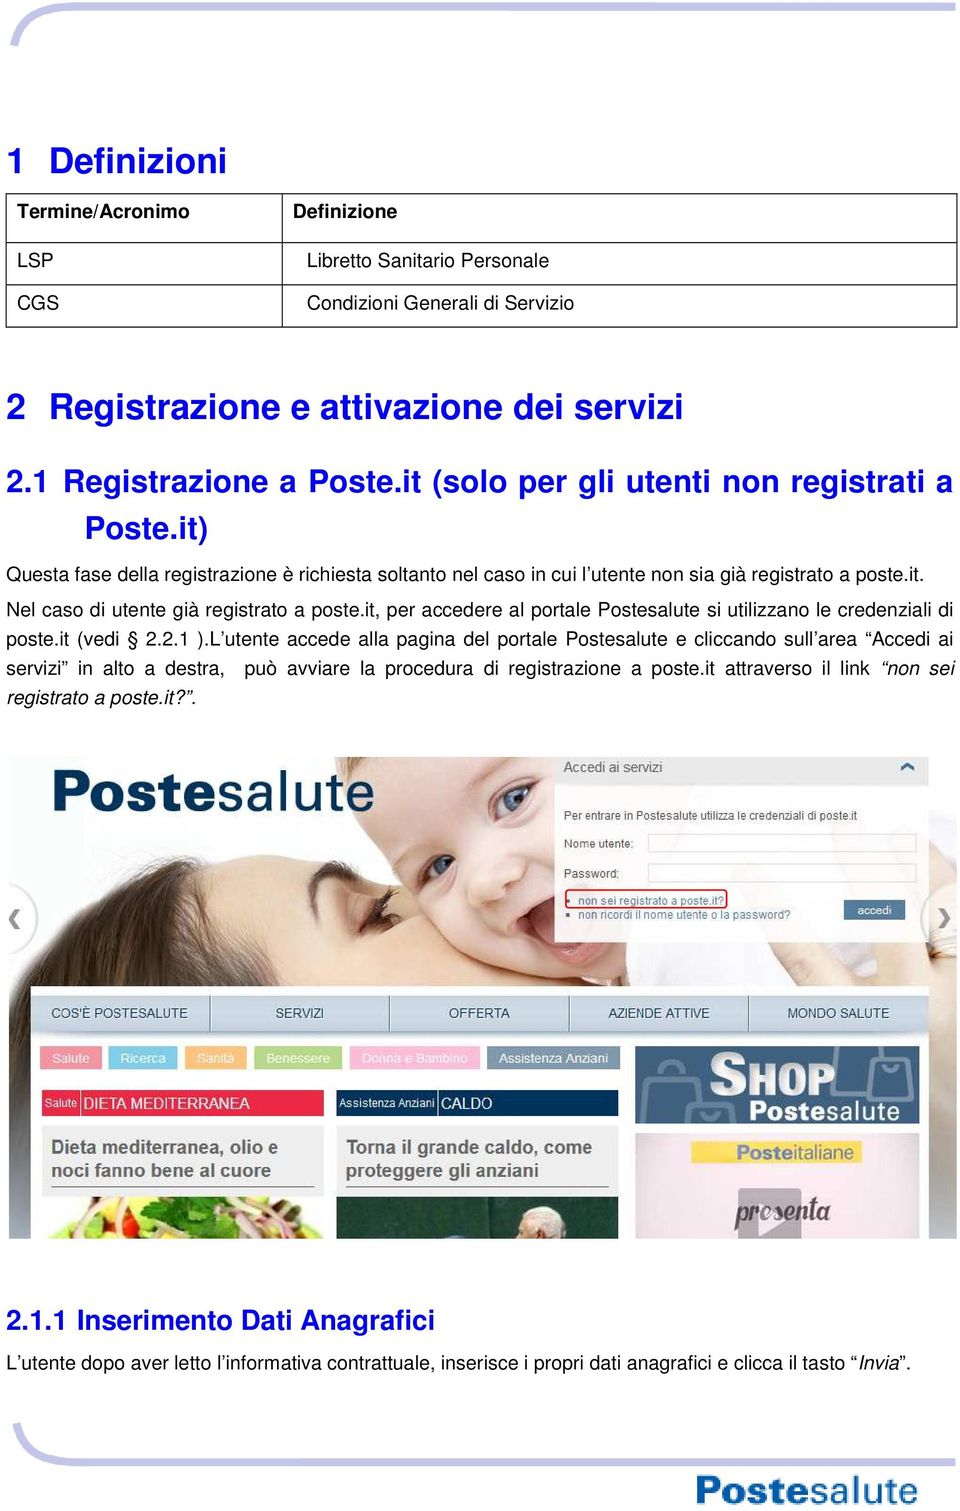 it, per accedere al portale Postesalute si utilizzano le credenziali di poste.it (vedi 2.2.1 ).